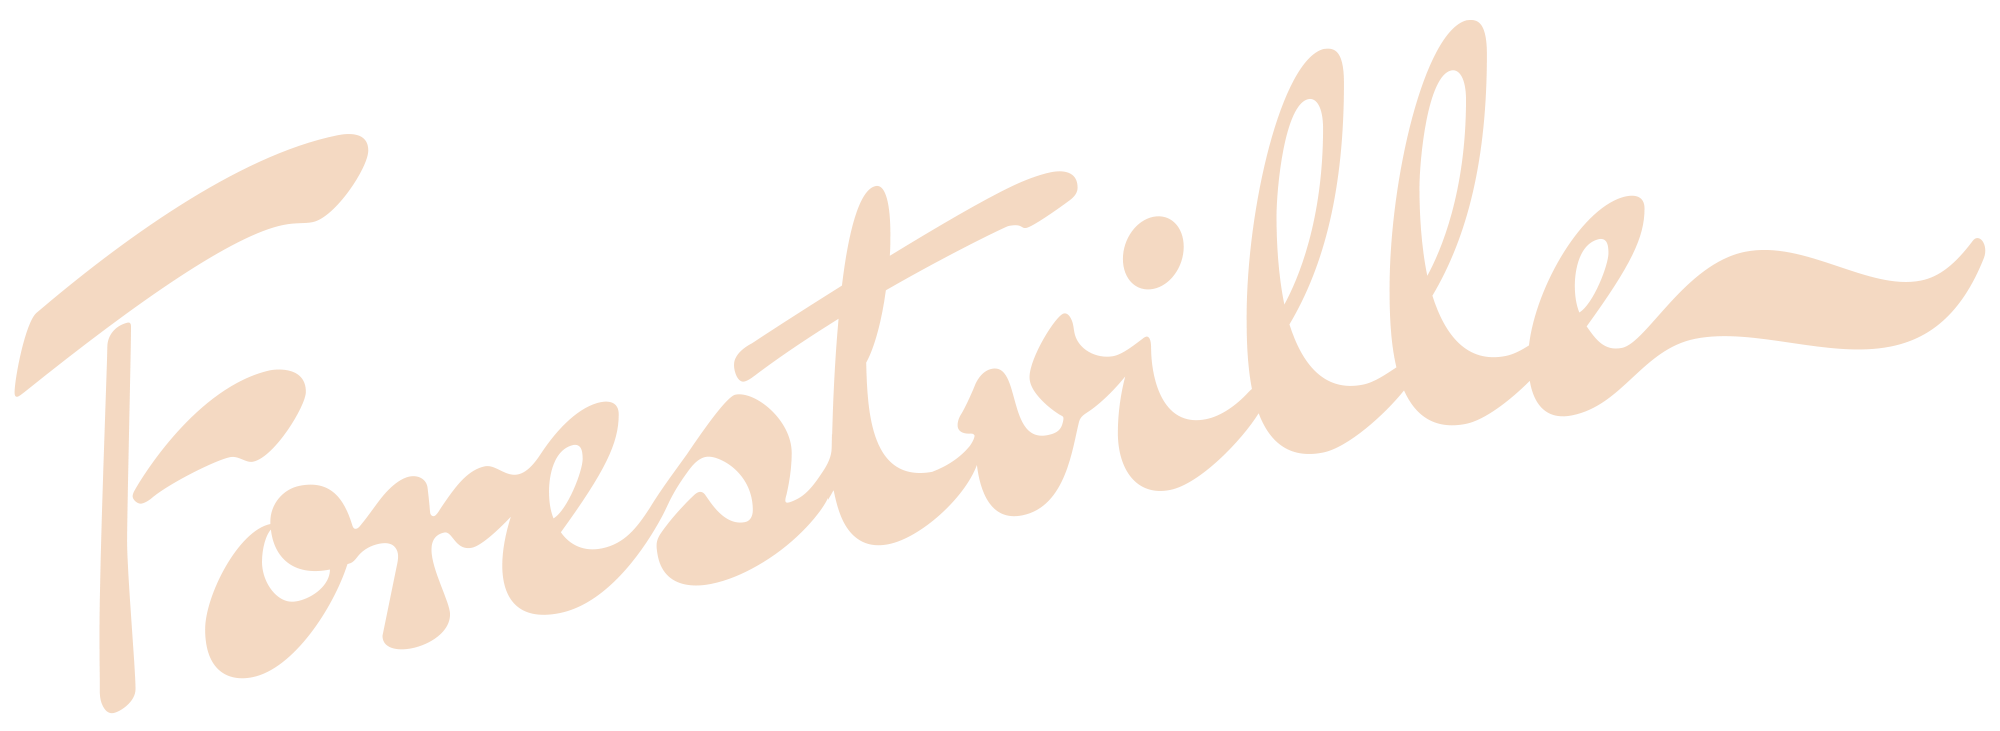 Forestville Logo